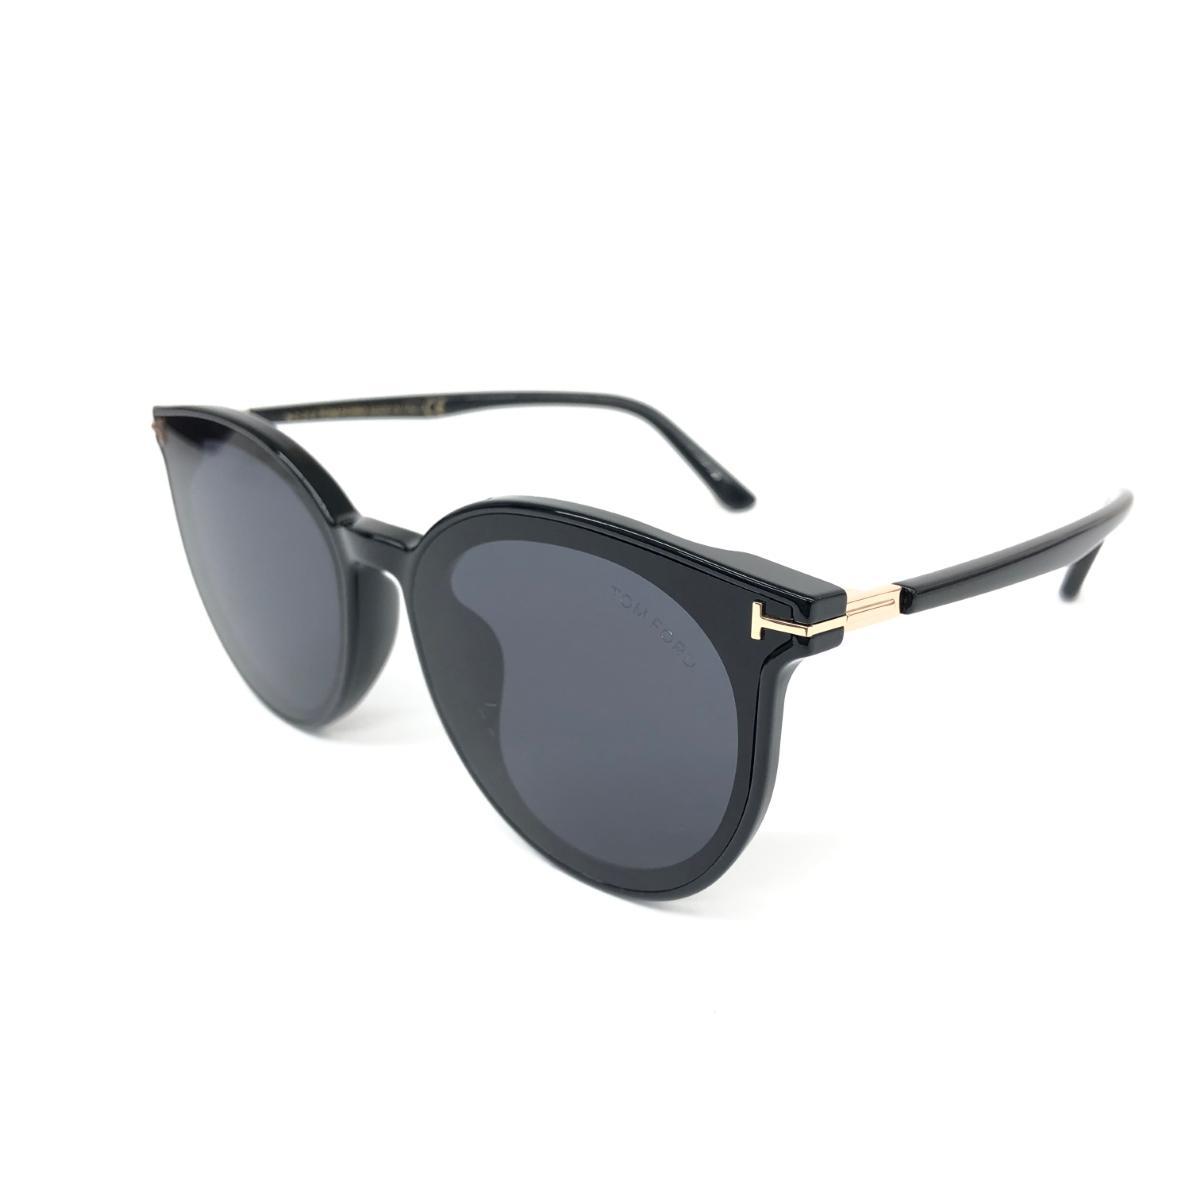 良好◆TOM FORD トムフォード サングラス◆TF807-K ブラック ユニセックス メガネ 眼鏡 サングラス sunglasses 服飾小物